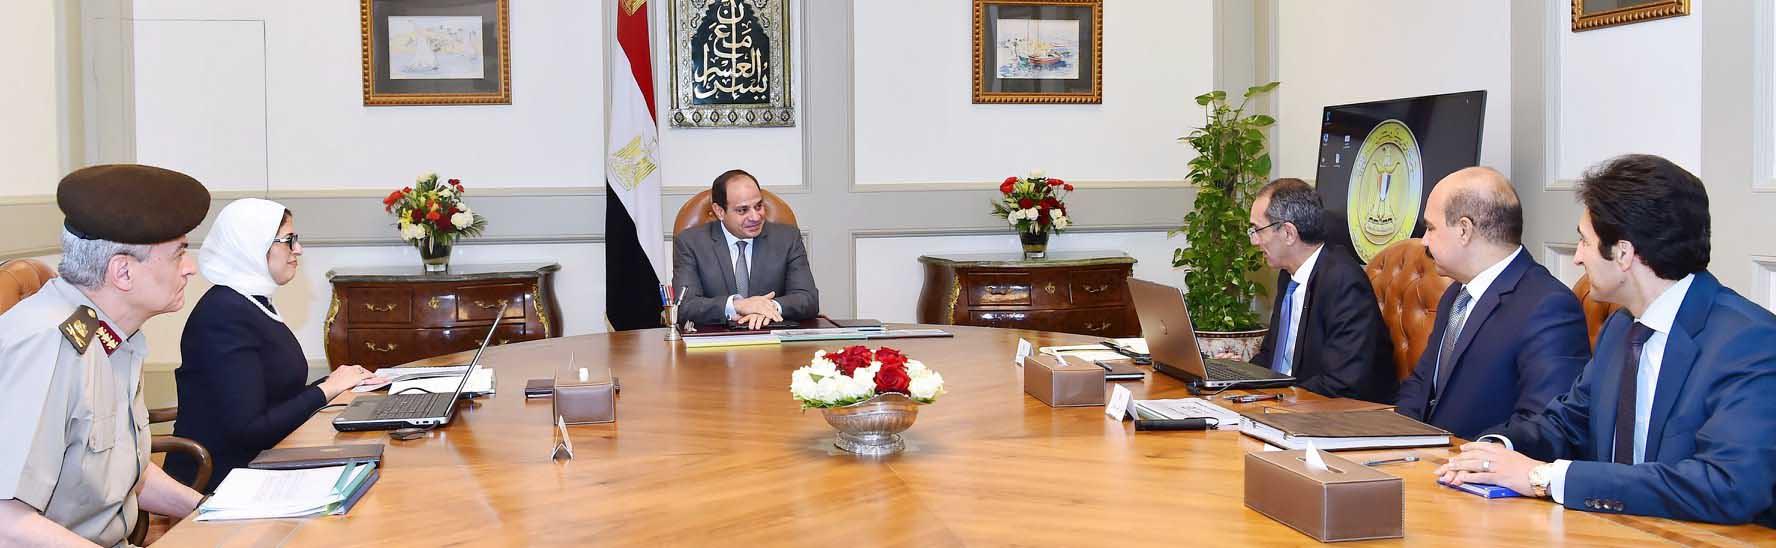 السيسي يلتقي وزيري الصحة والاتصالات